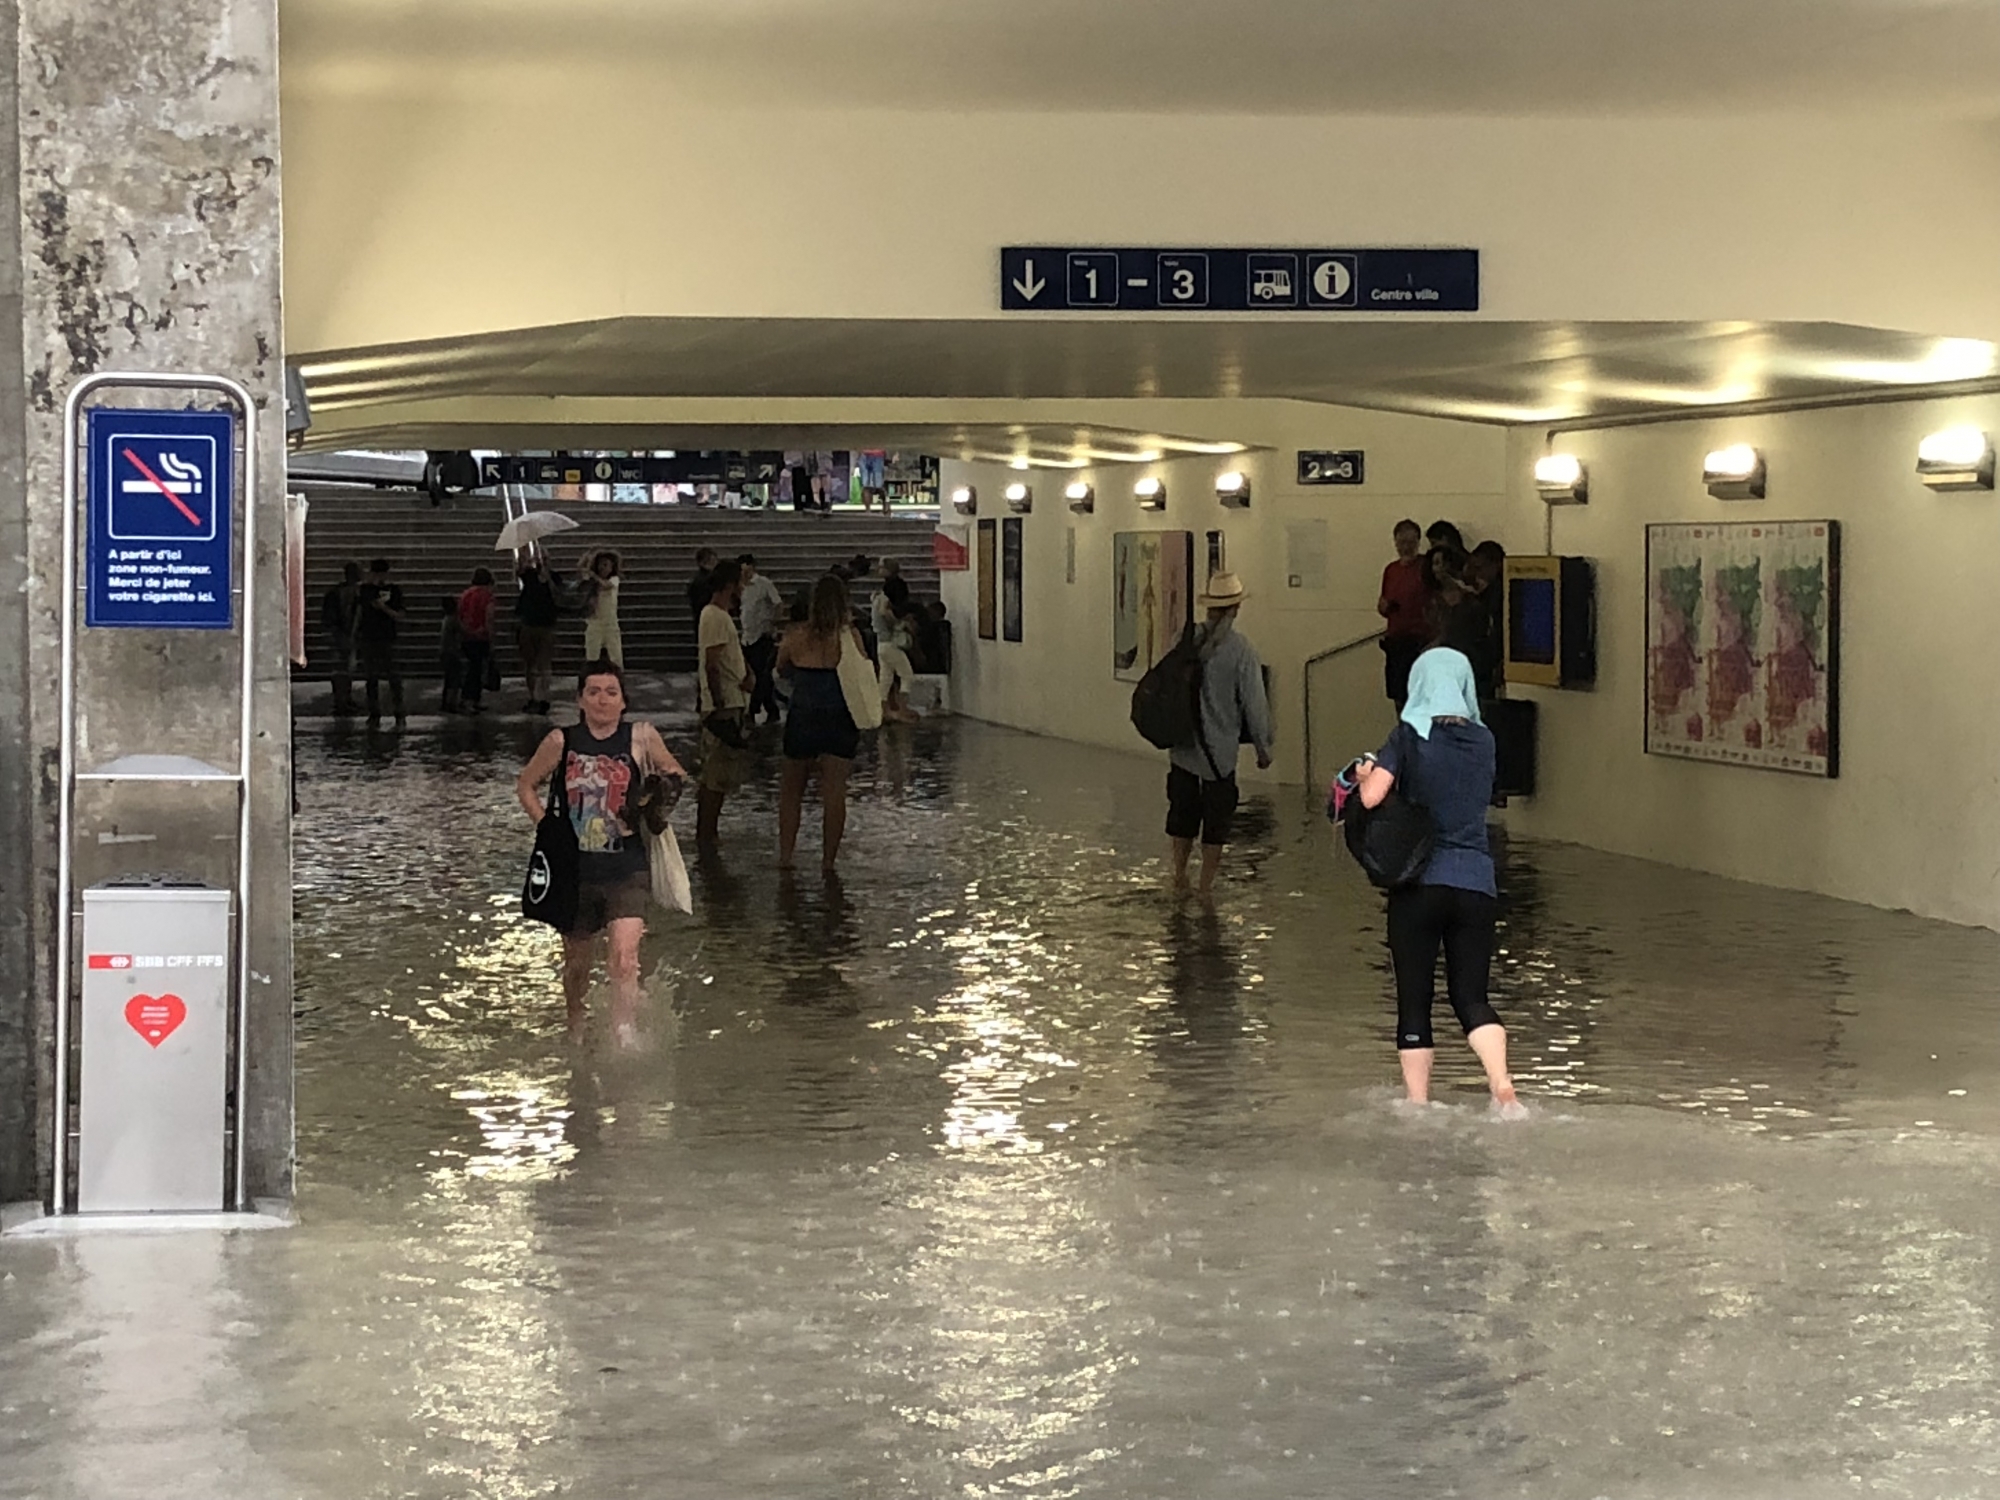 L'année dernière, le passage de la gare de Nyon avait été inondé.